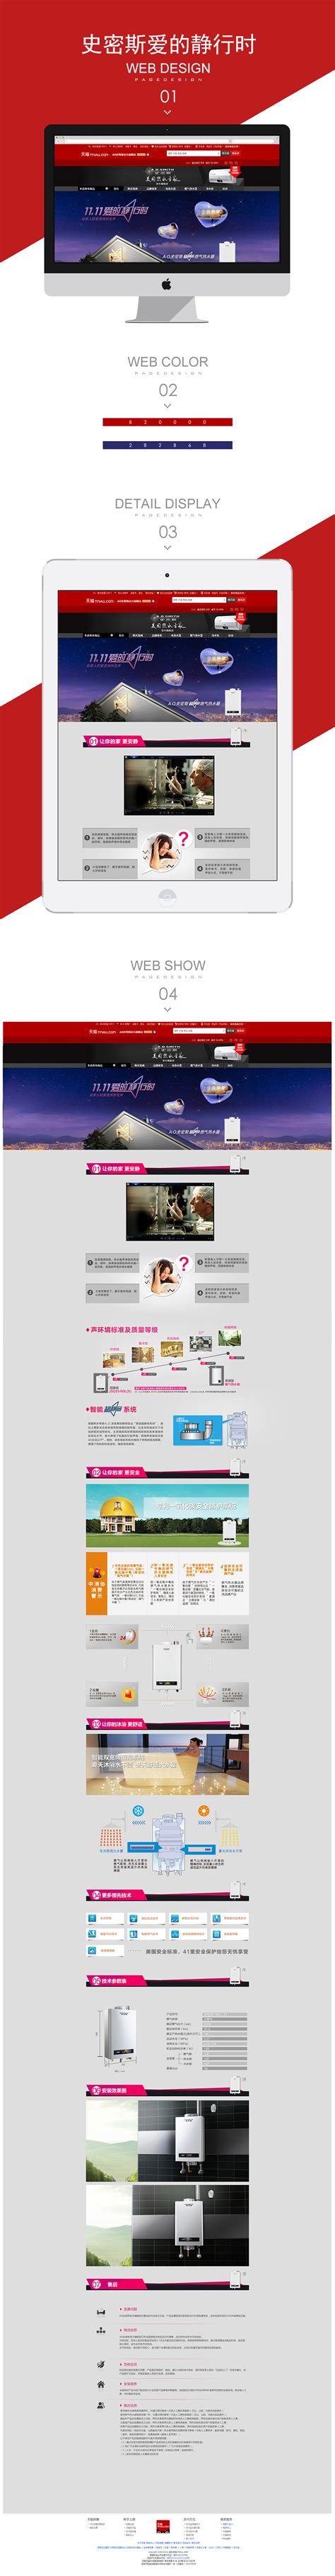 怡景建筑造型-南京做网站公司_南京网站设计公司_南京网站制作公司